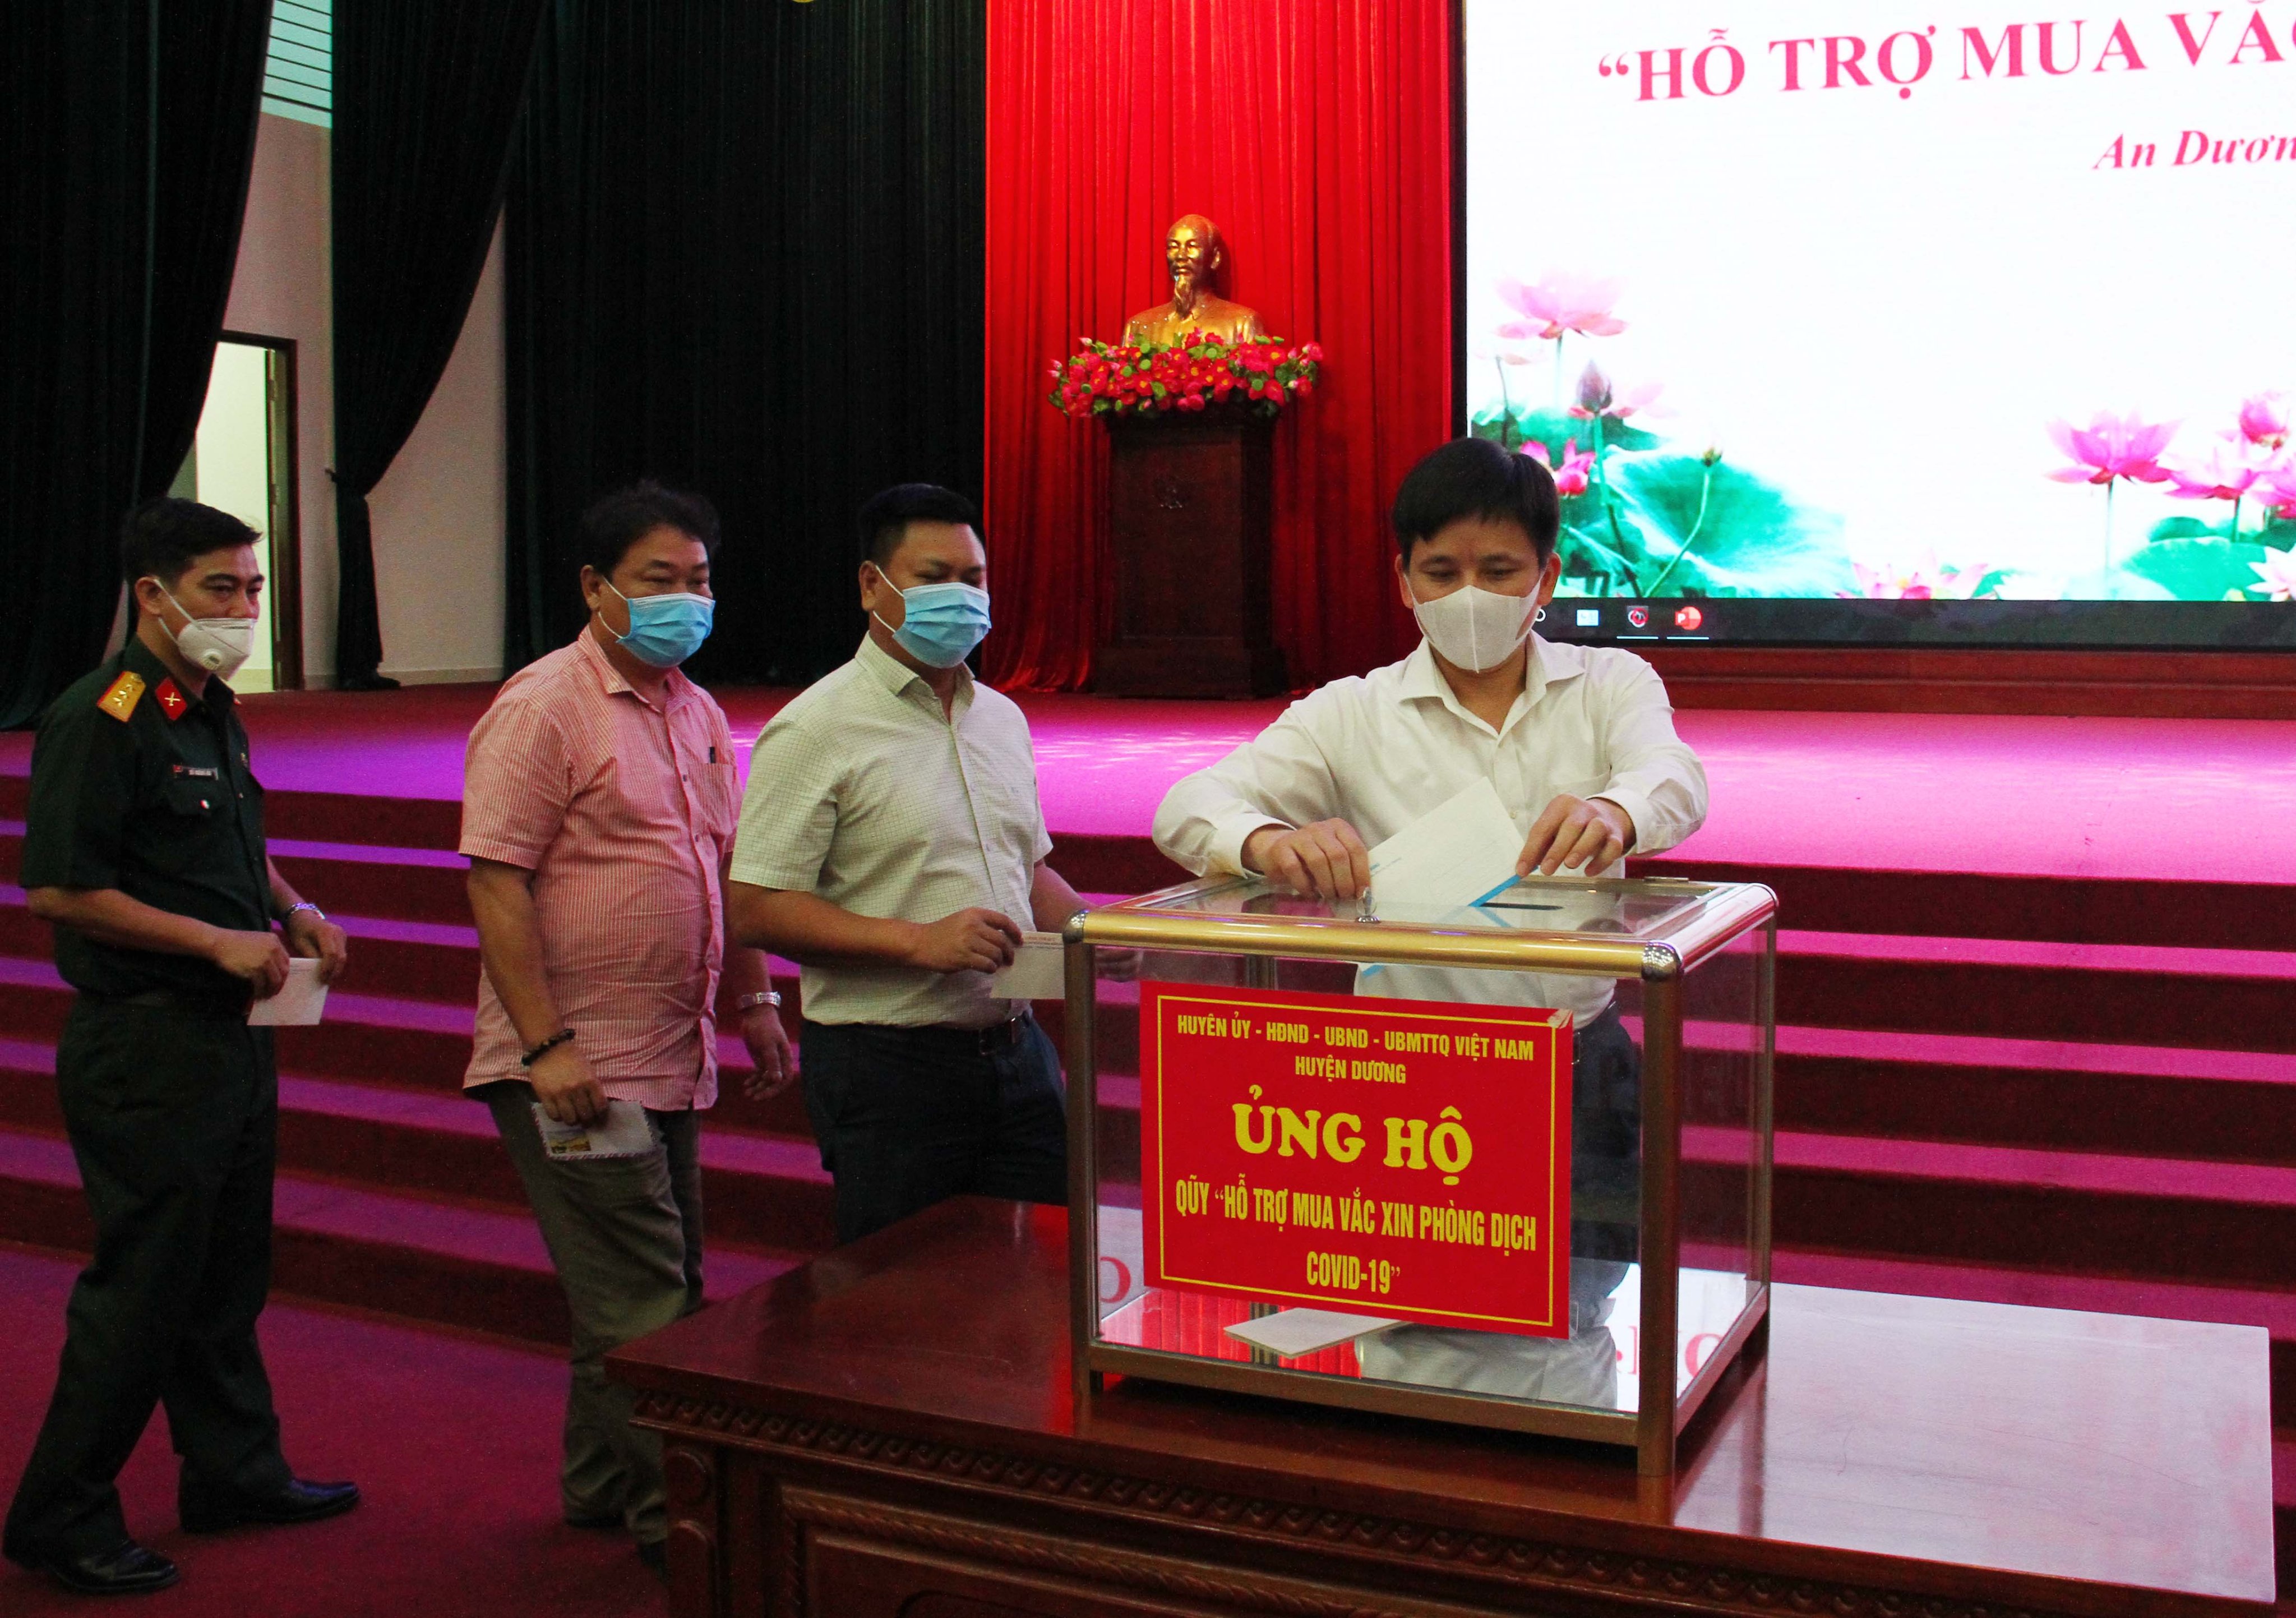 Lãnh đạo huyện An Dương tham gia ủng hộ Quỹ hỗ trợ mua vắc xin phòng chống Covid-19